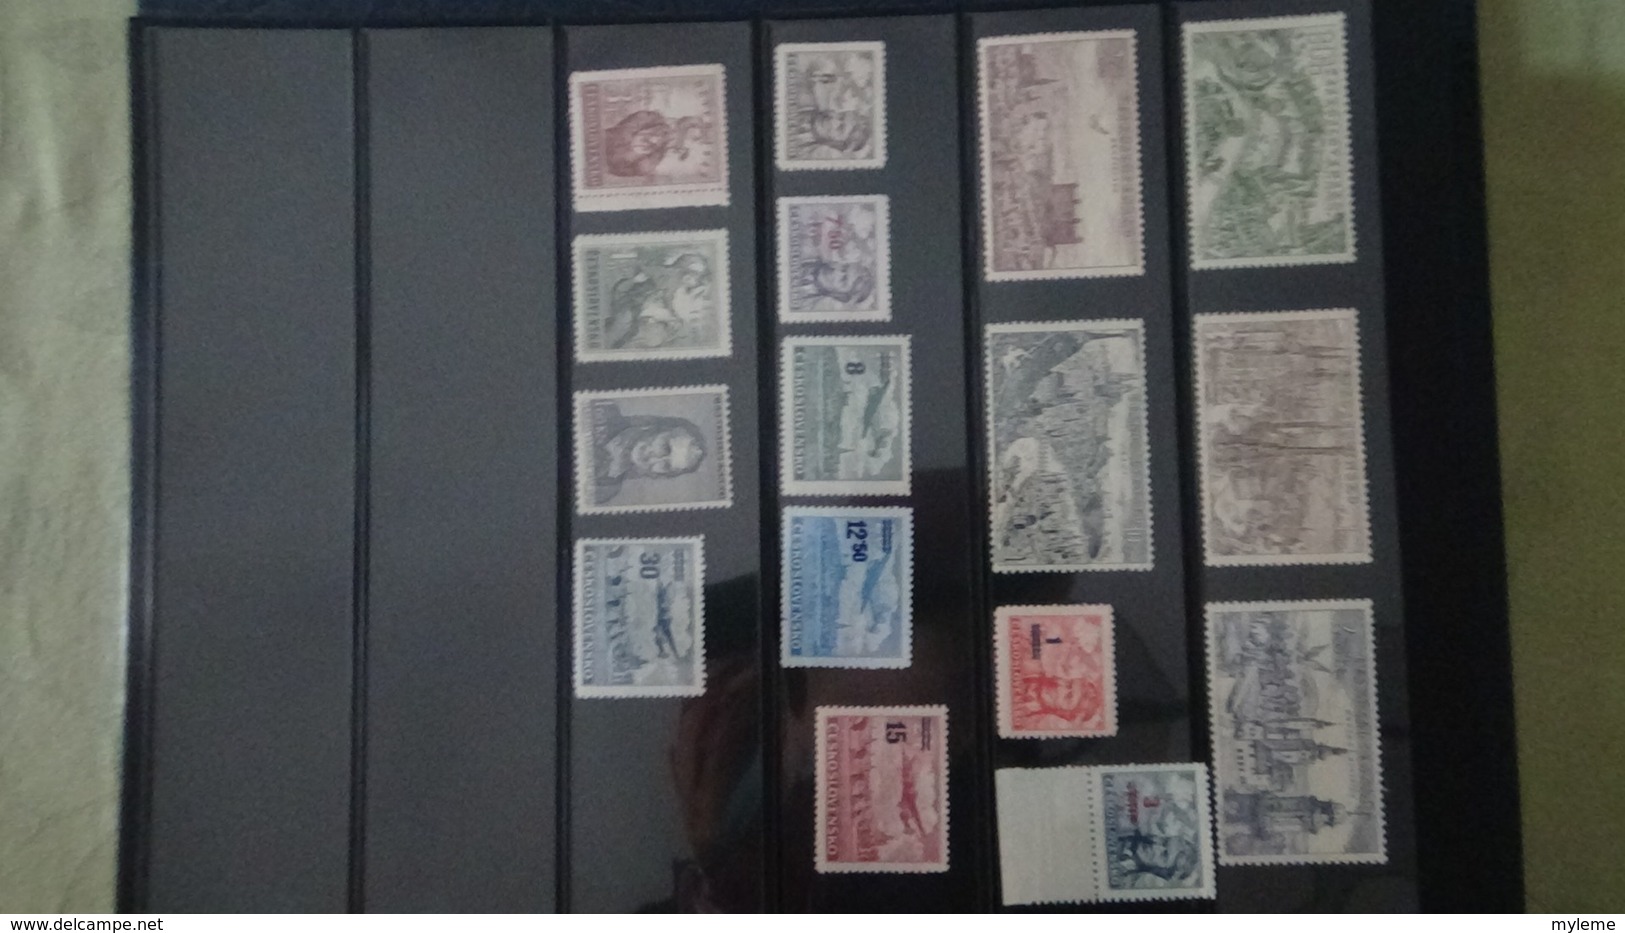 Grosse collection de République Tchèque ** en timbres et blocs. 5 de 5 Port offert dès 50 euros d'achats.